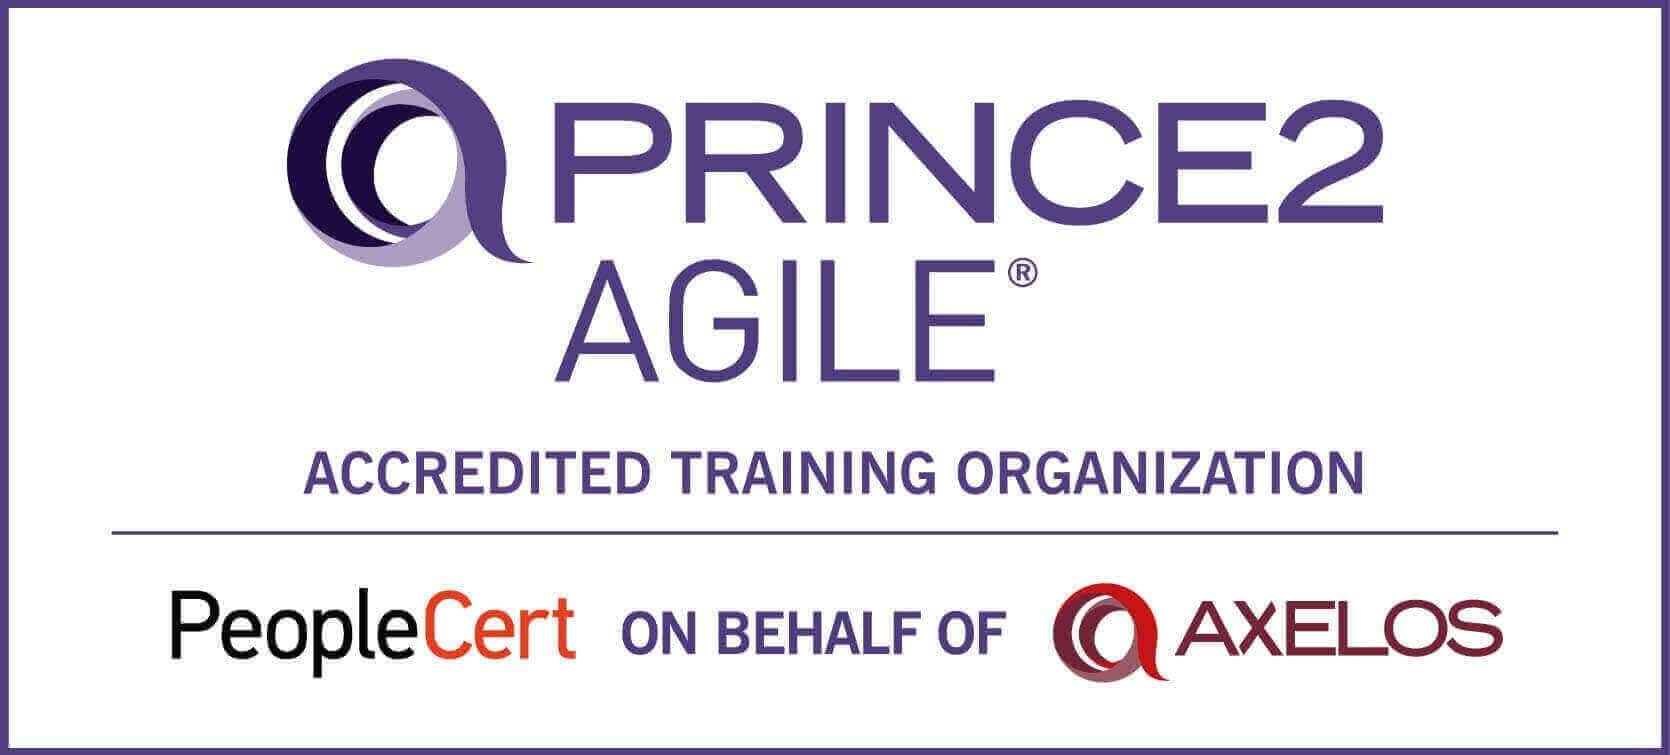 PRINCE2 Agile®  logo